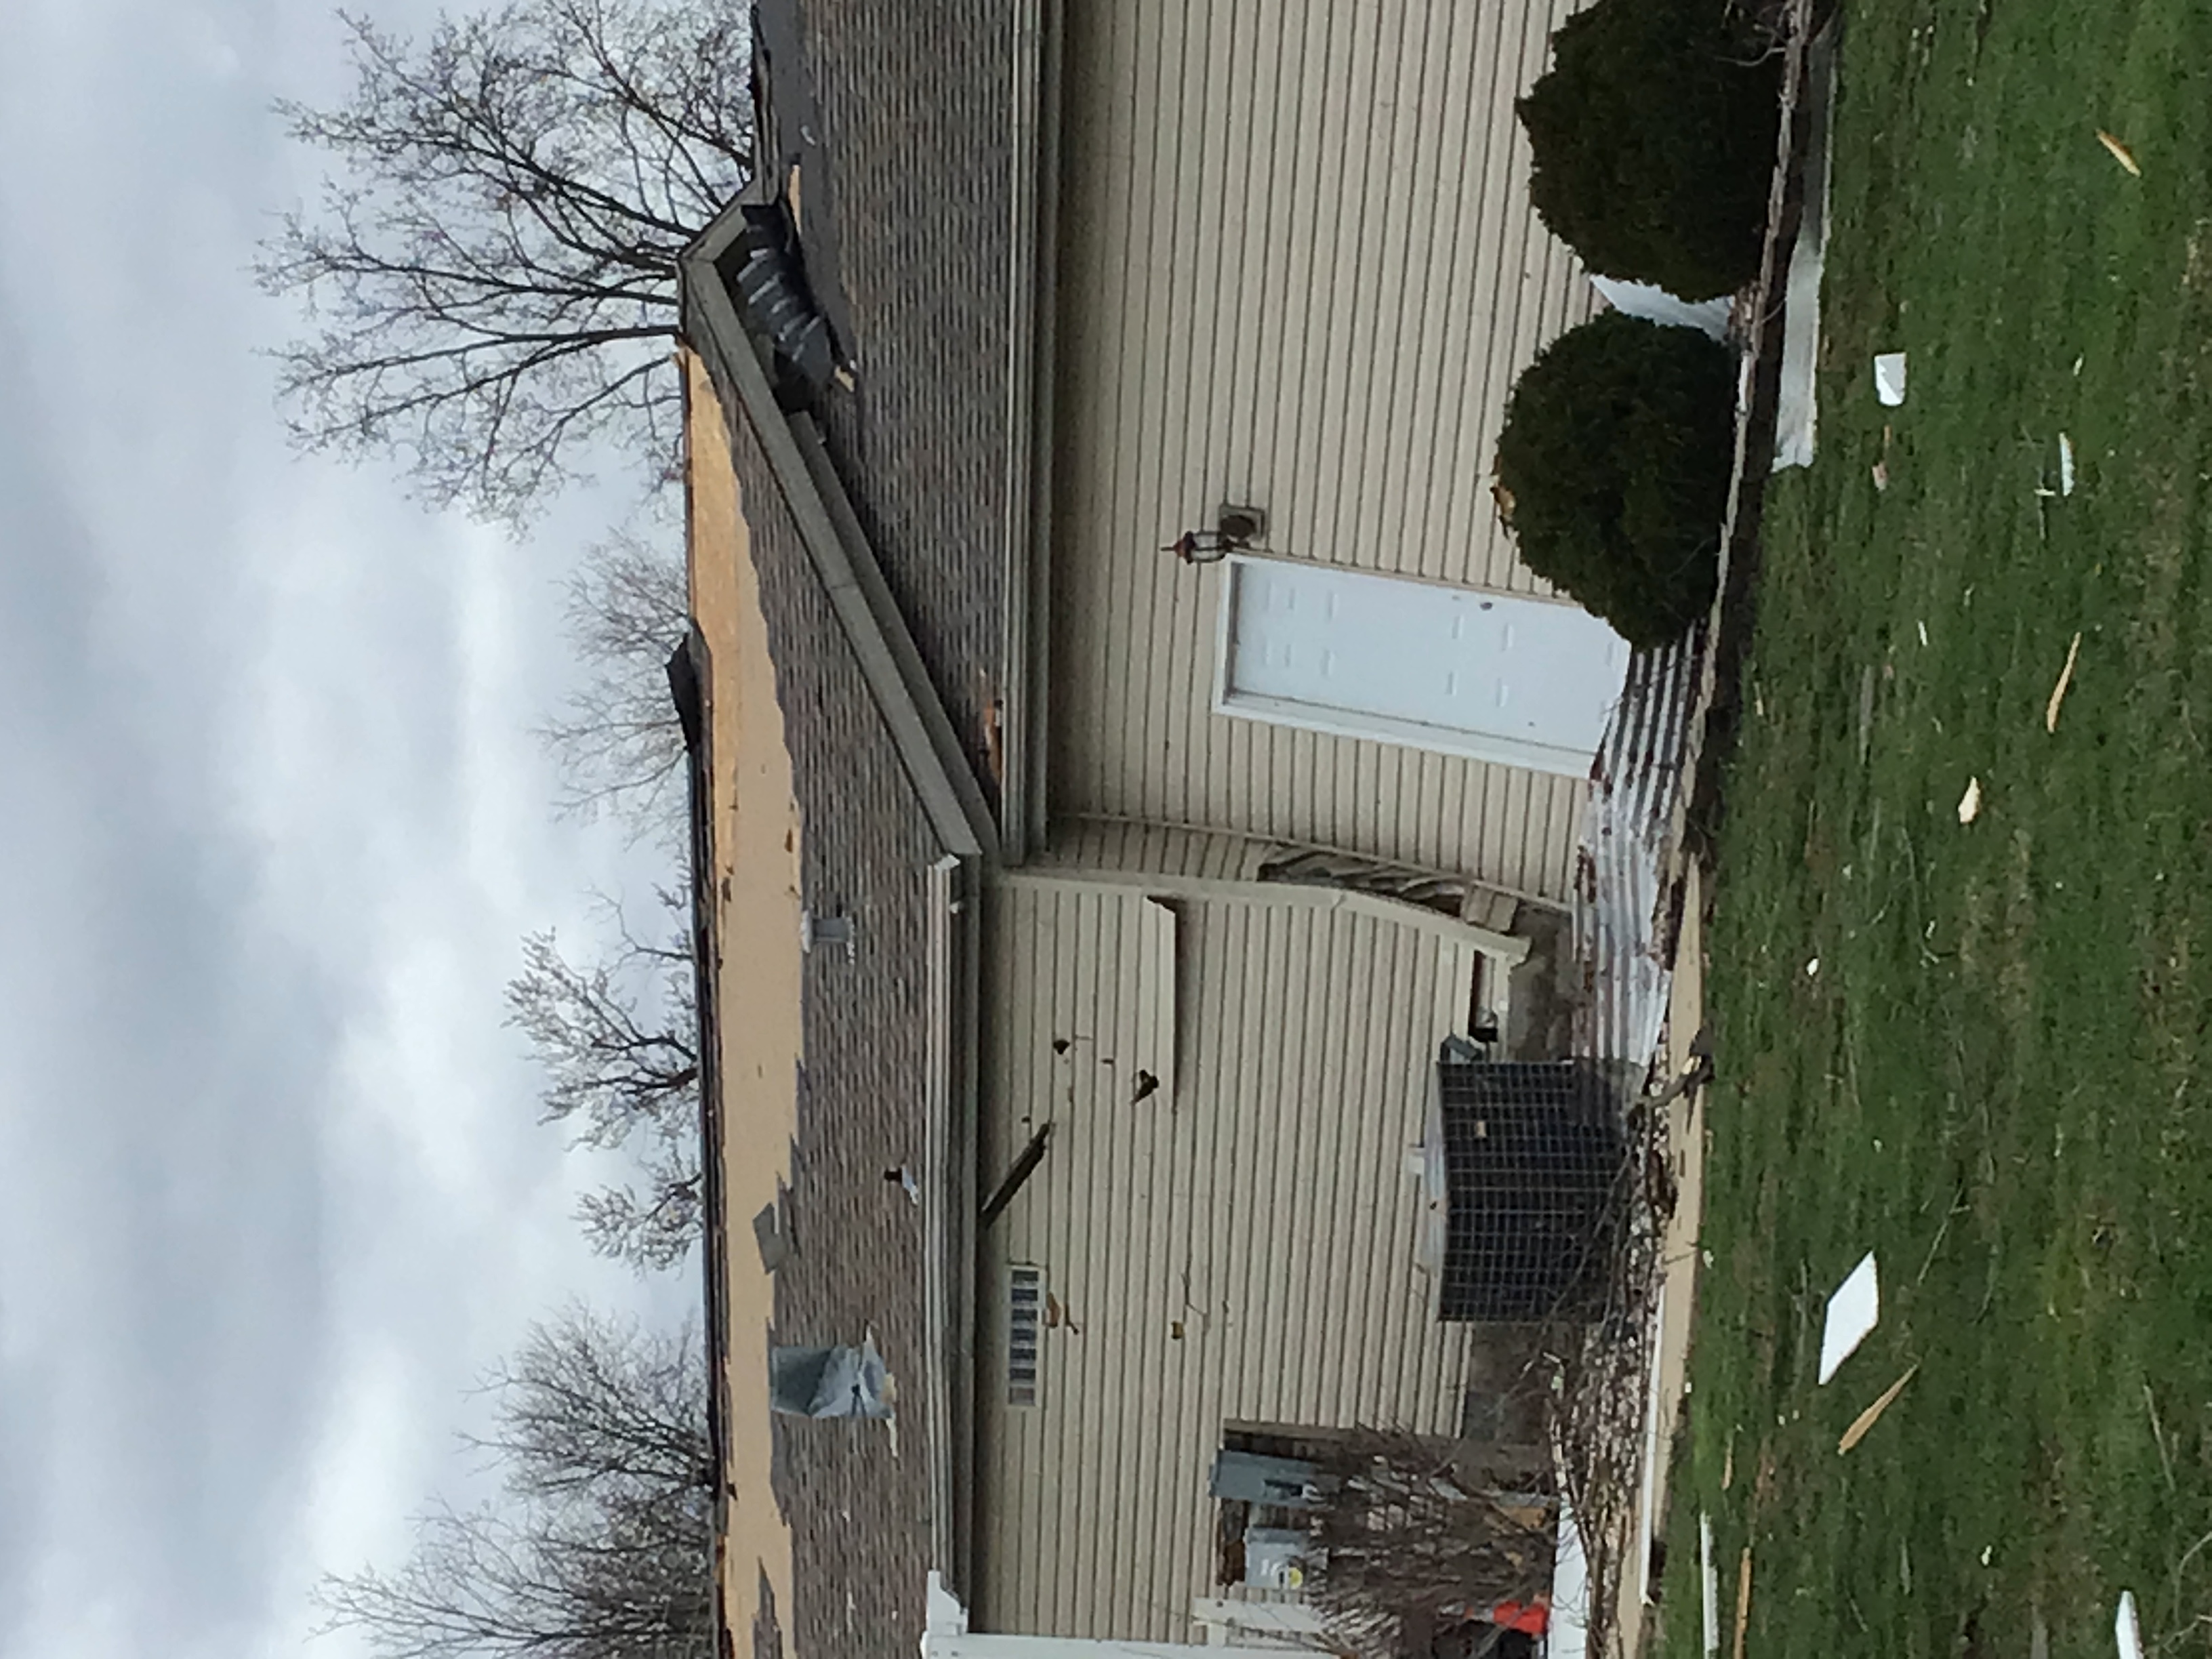 EF1 Damage, whole house shifted off foundation.